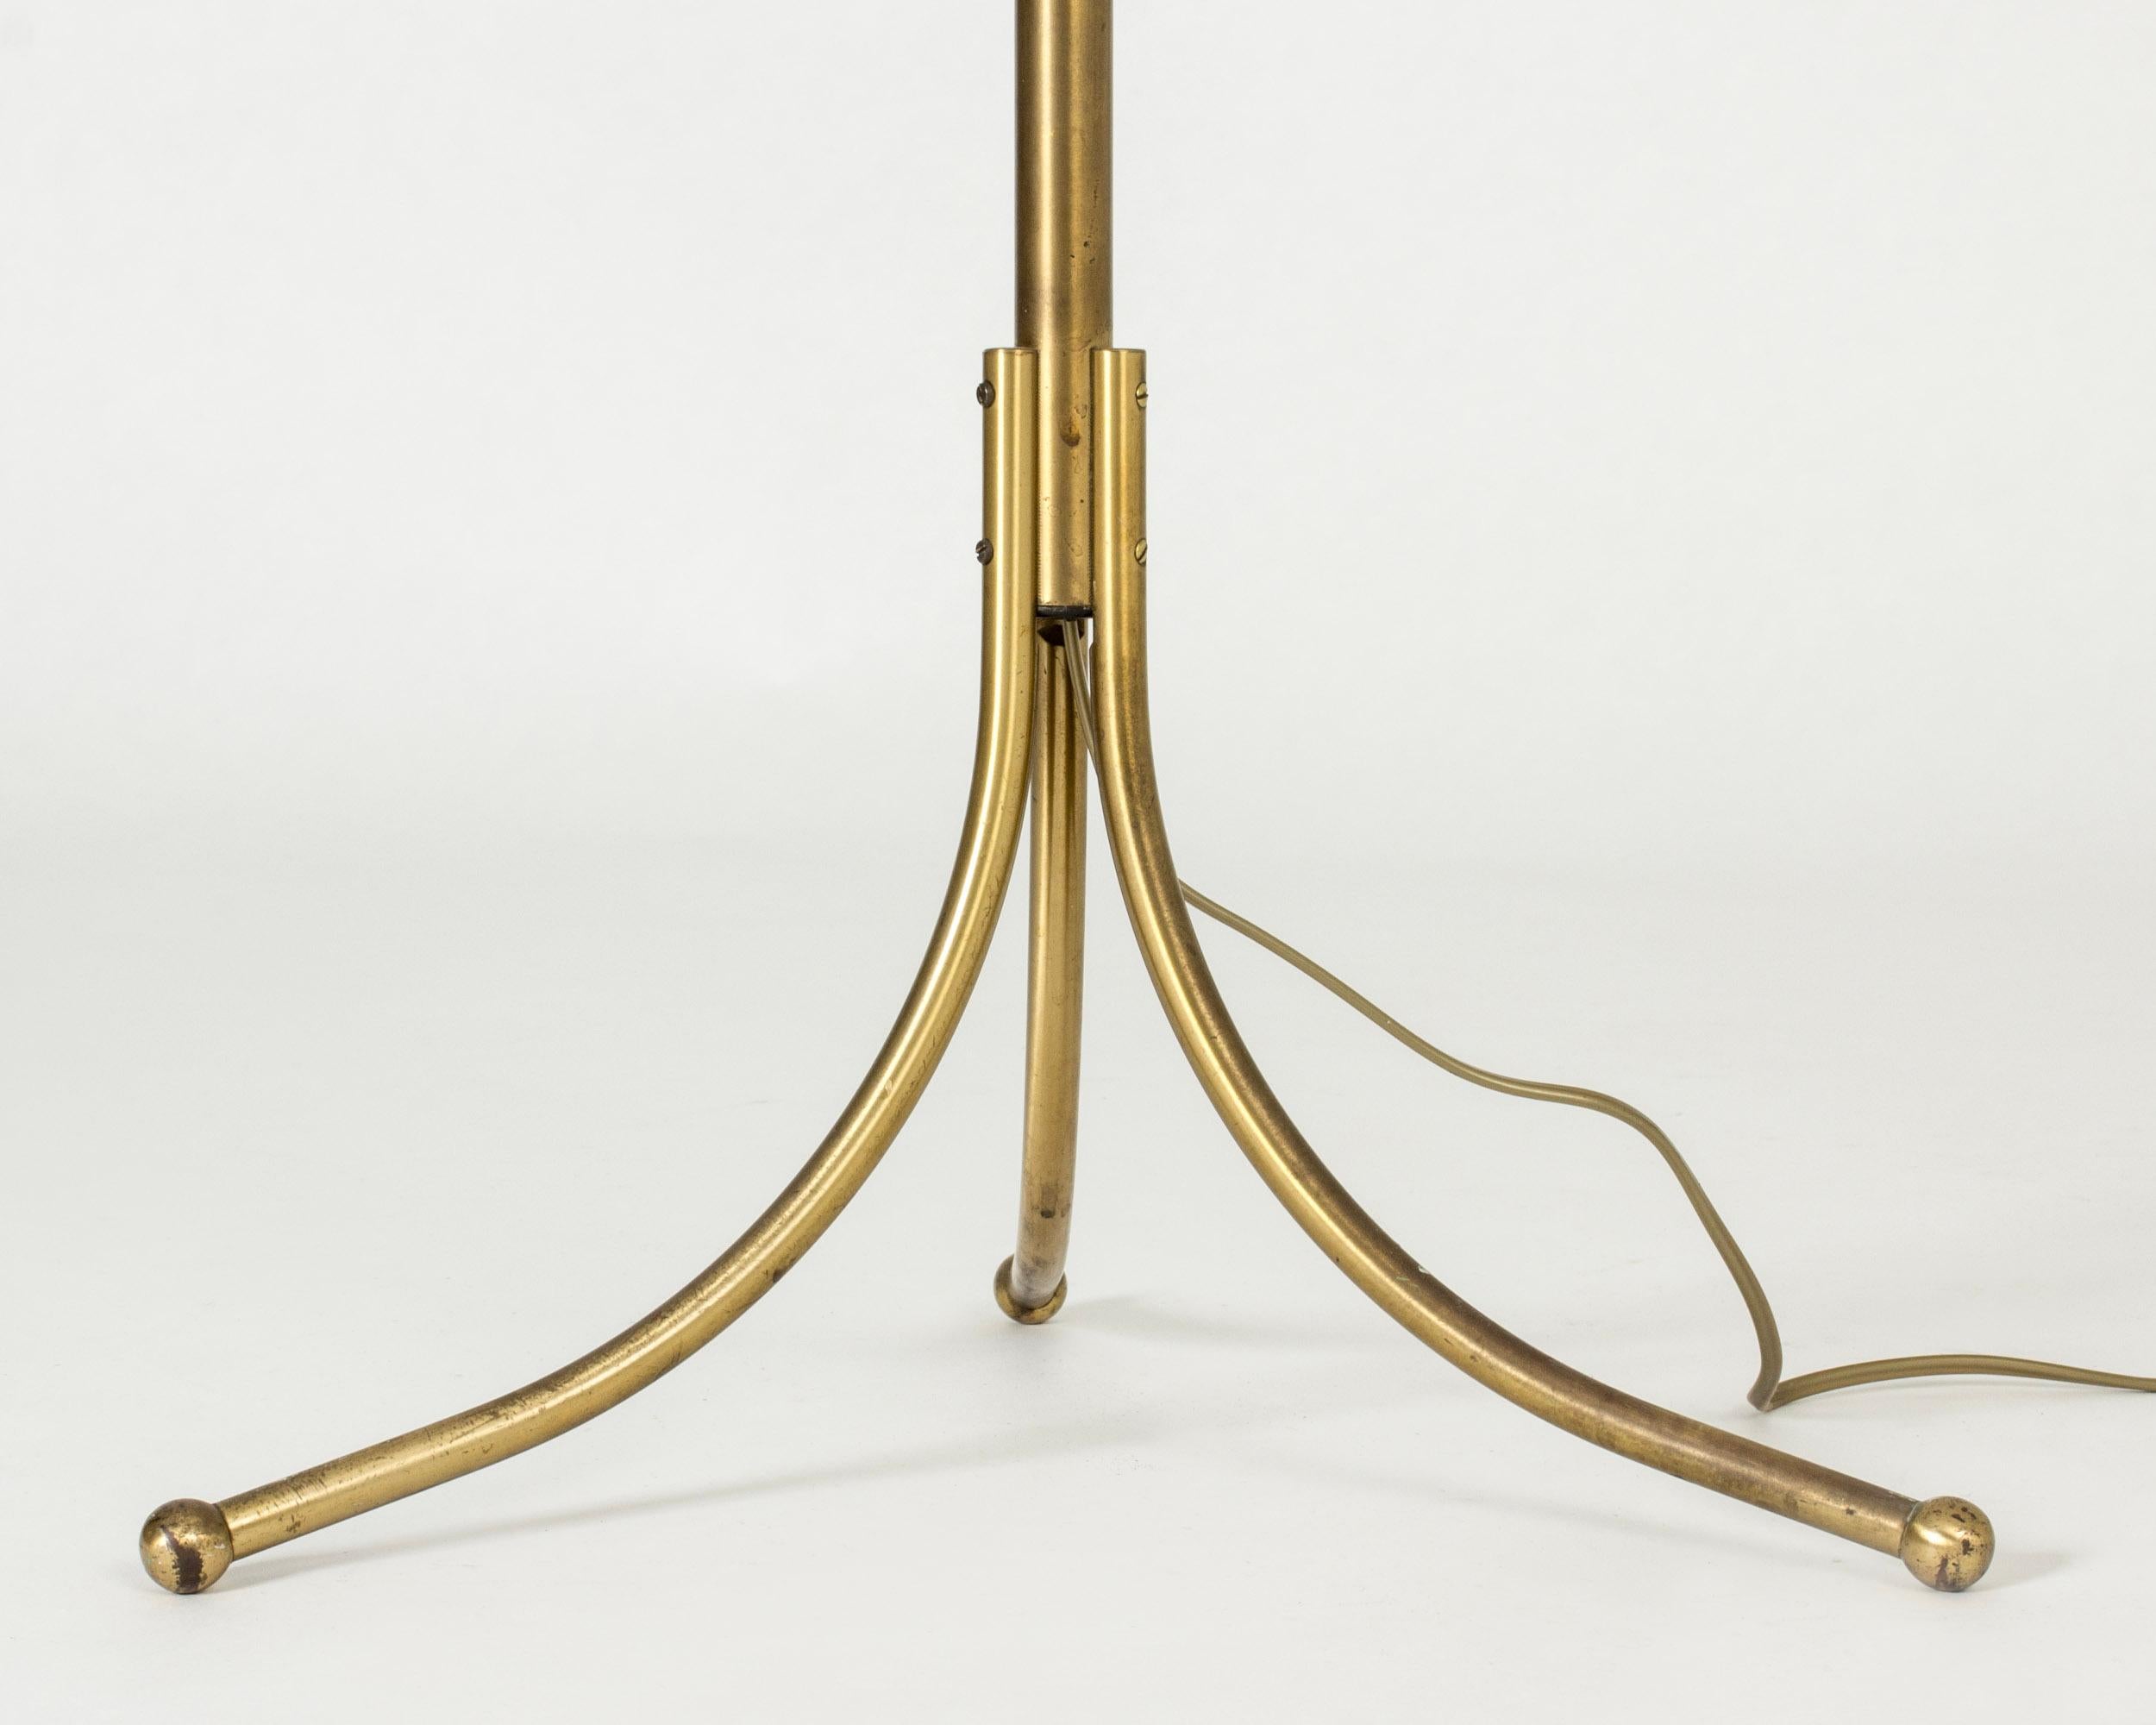 Mid-20th Century Brass Floor Lamp model #1842 by Josef Frank for Svenskt Tenn, Sweden, 1950s For Sale